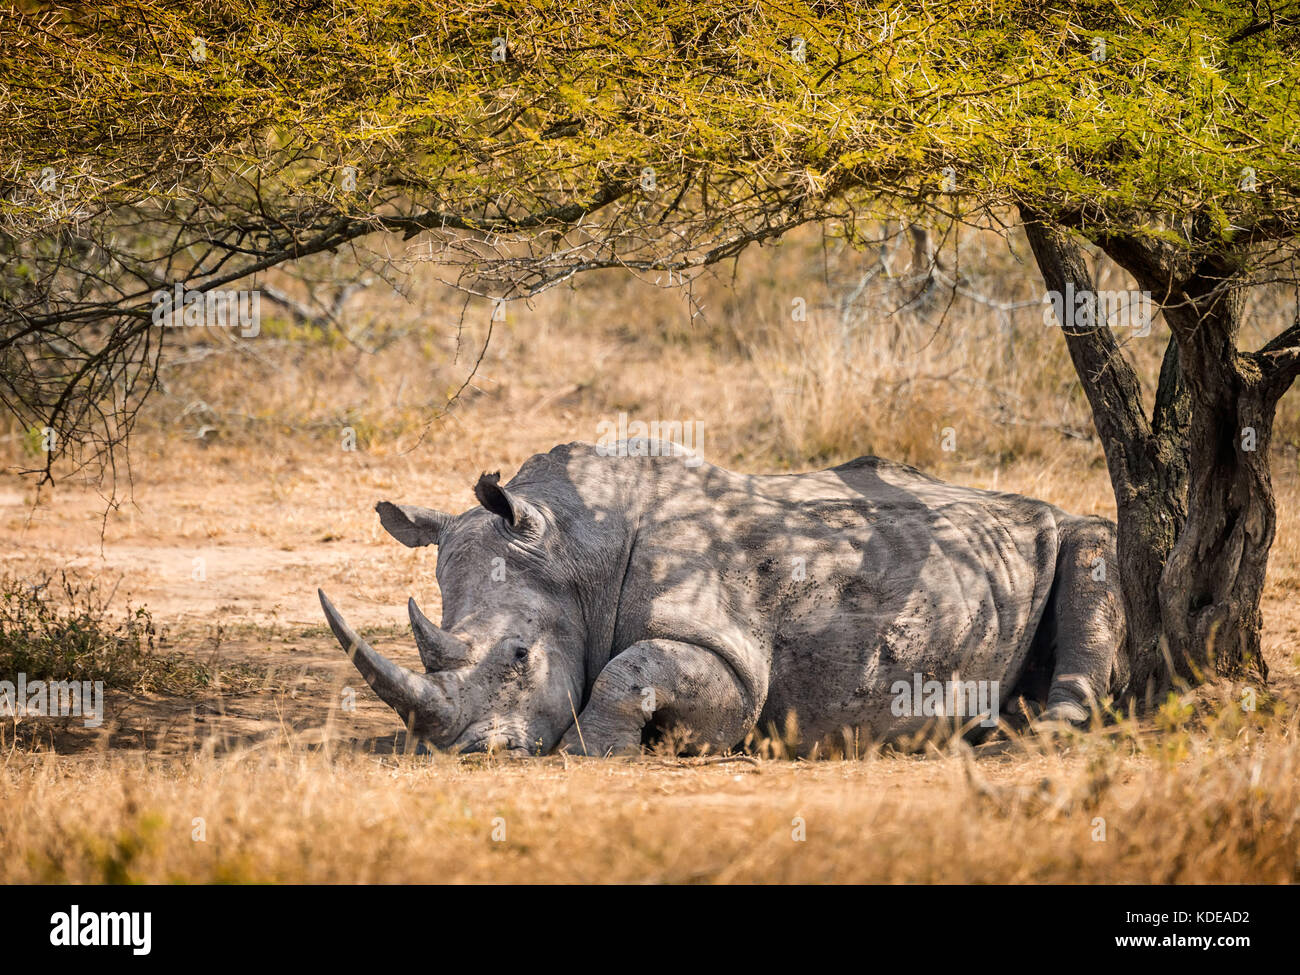 Rinoceronte blanco macho solitario descansando en la sombra de un árbol en el sur Africano arbusto Foto de stock